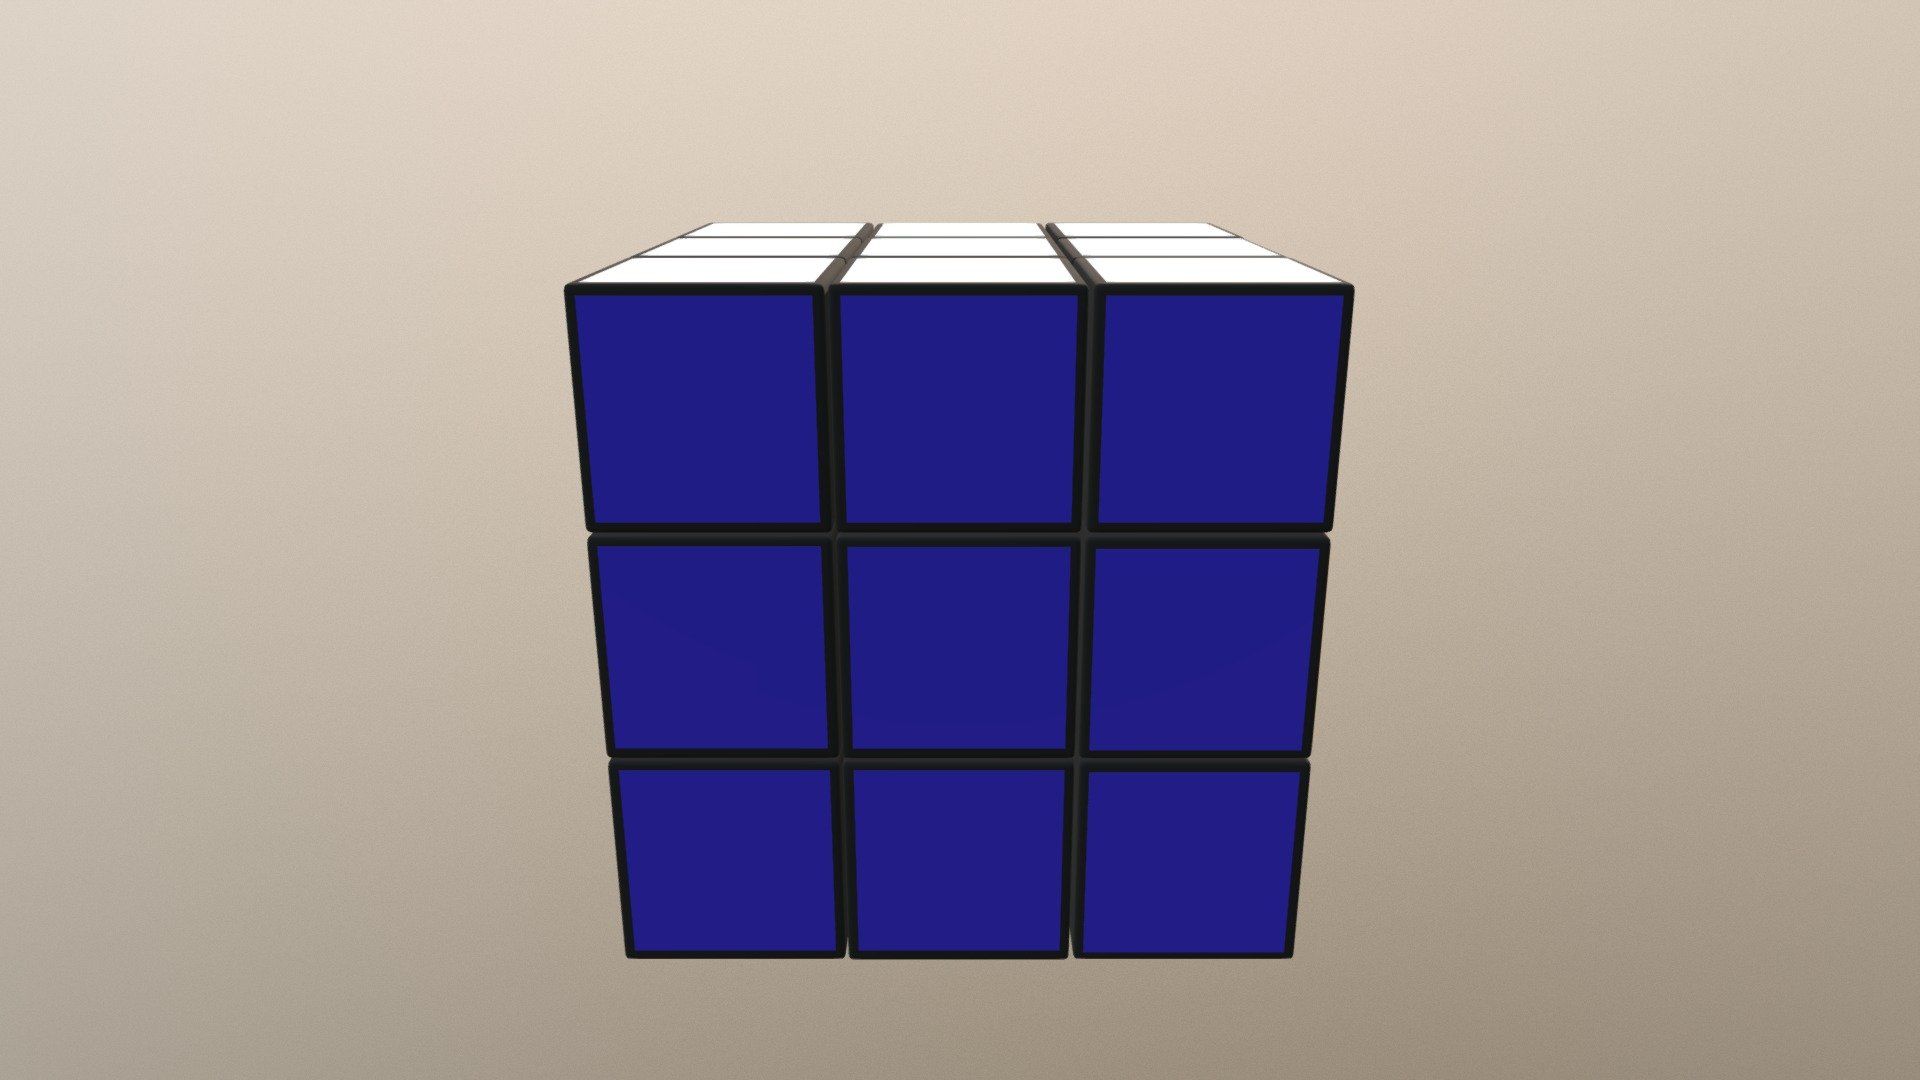 Rubiks Cube Image